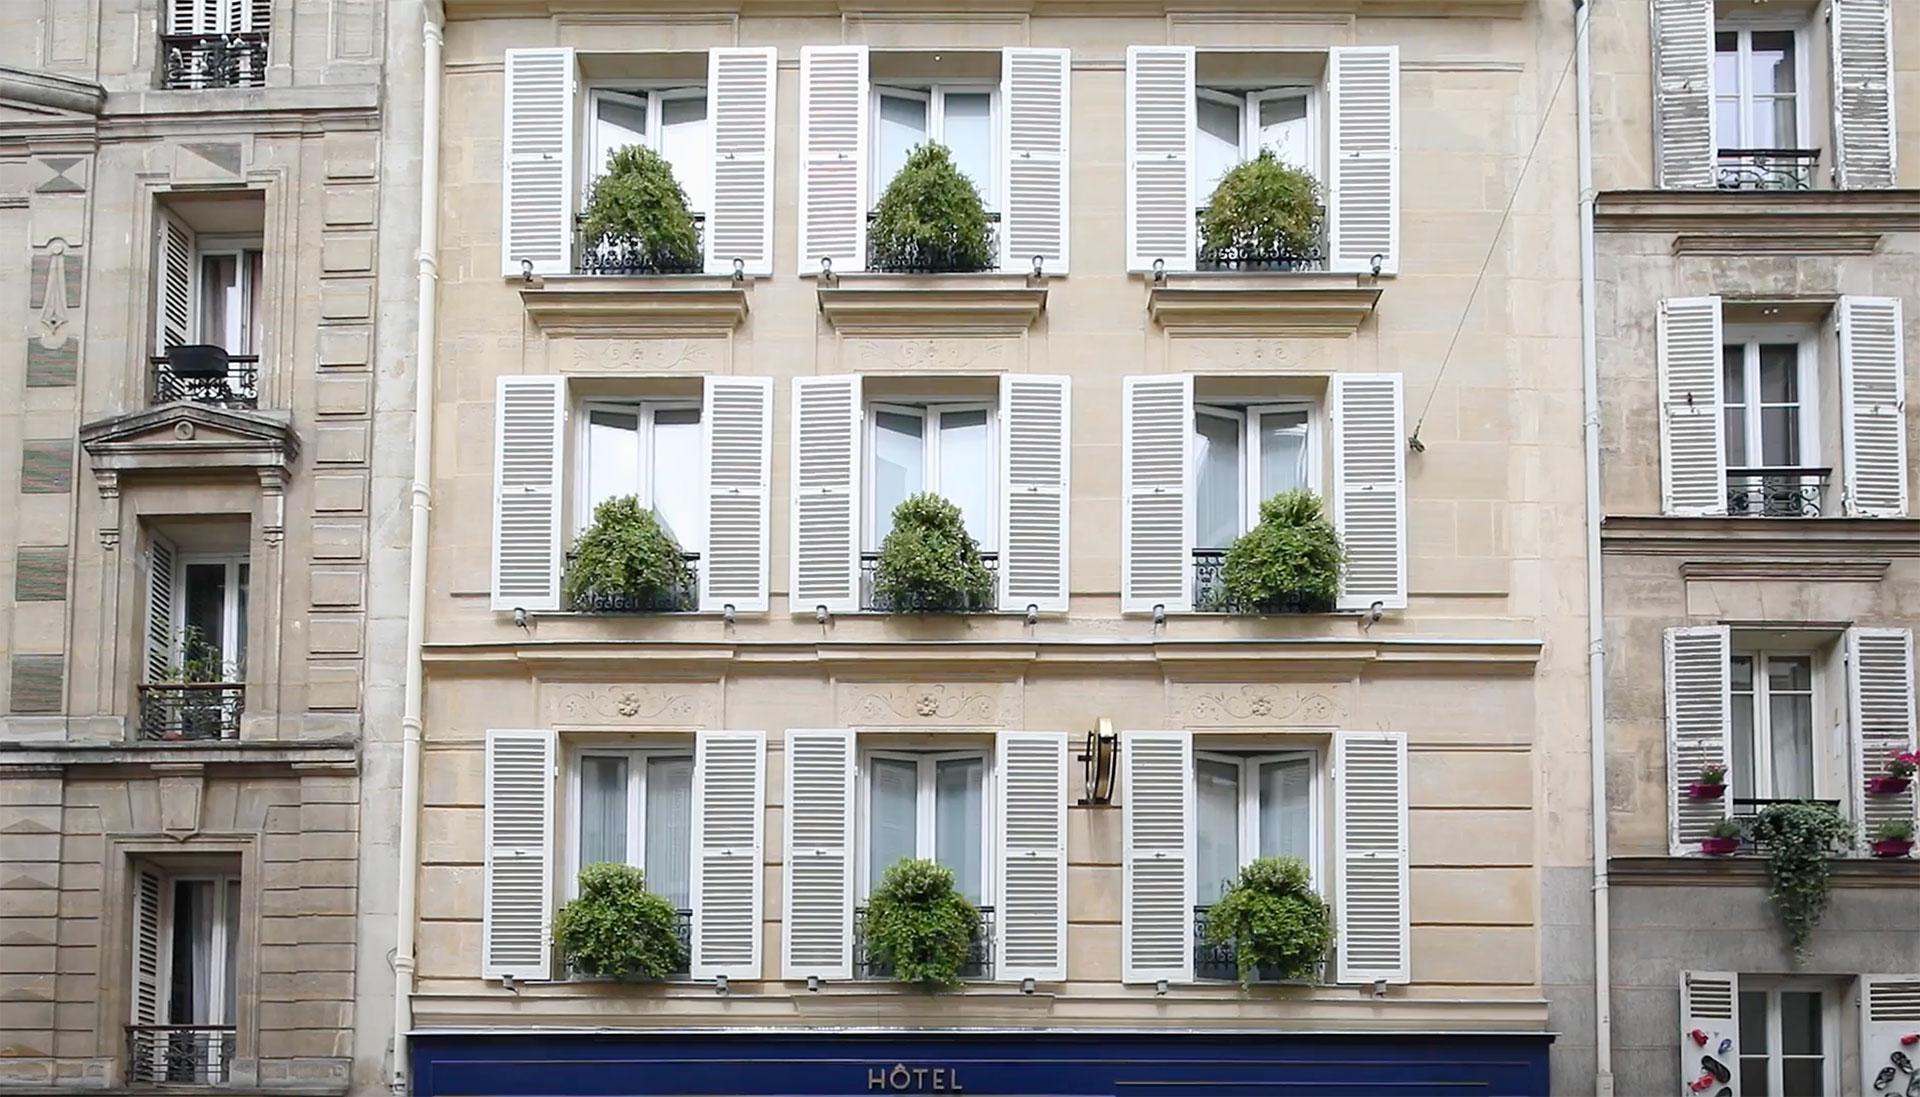 Hotel des Academies et des Arts, Hotel Montmartre